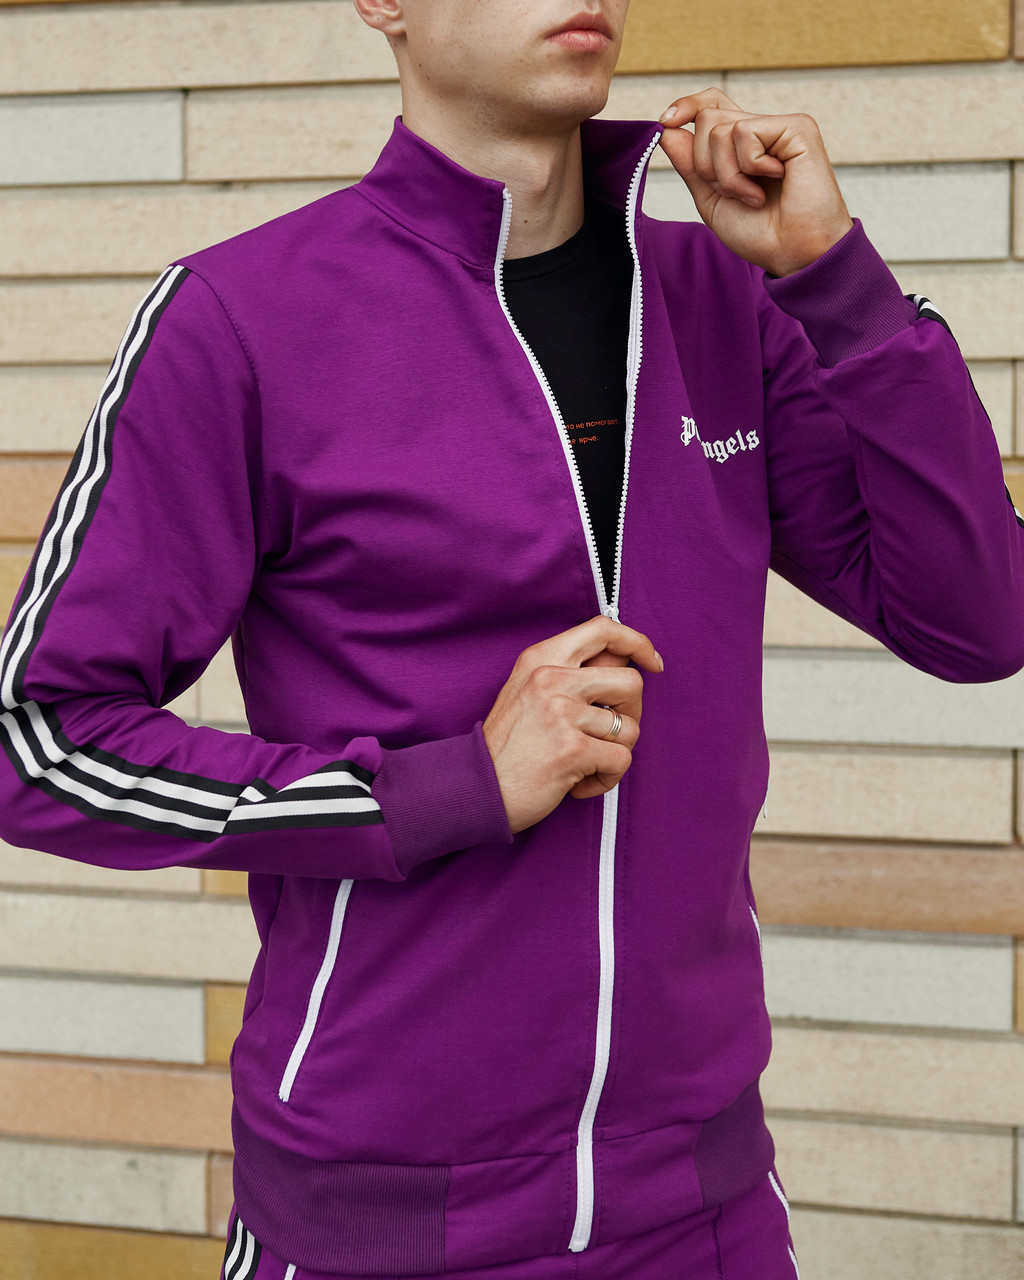 Олимпийка мужская в стиле Palm Angels фиолетовая Пушка Огонь - Фото 3